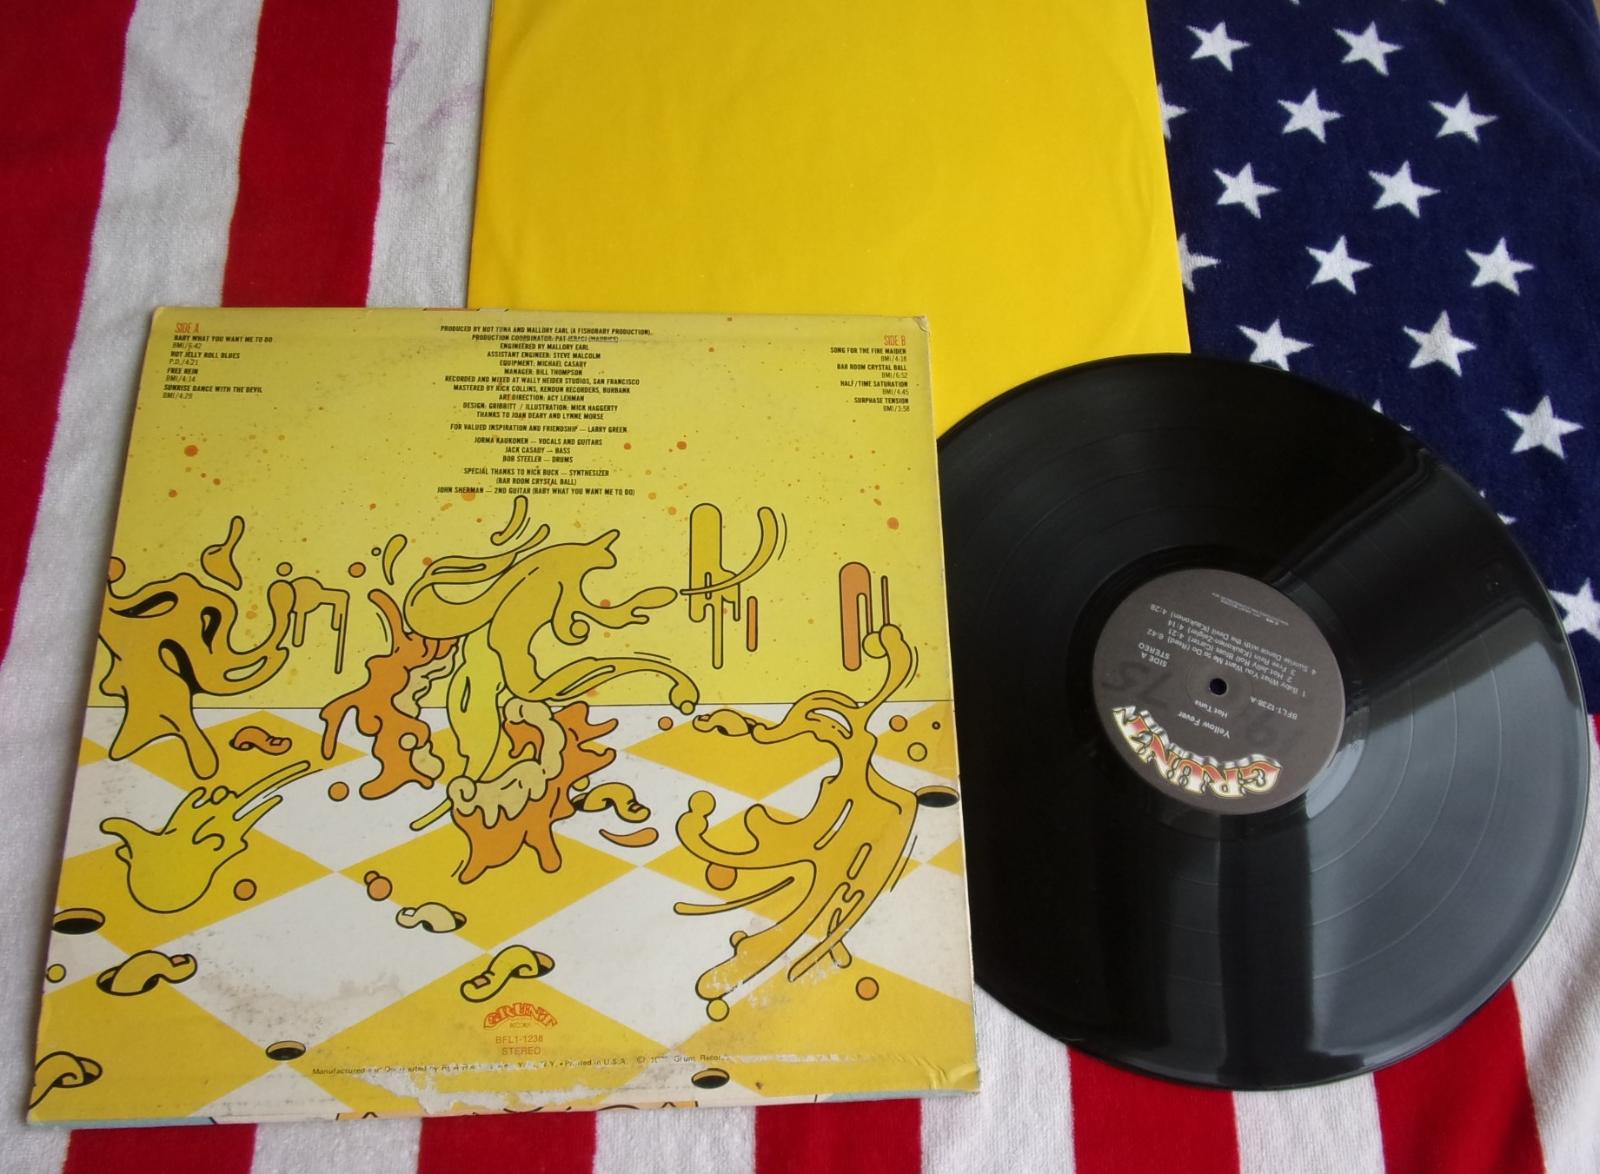 ☀️ LP: HOT TUNA - YELLOW FEVER, skoro nová 1vyd USA Jefferson Airplane - LP / Vinylové desky